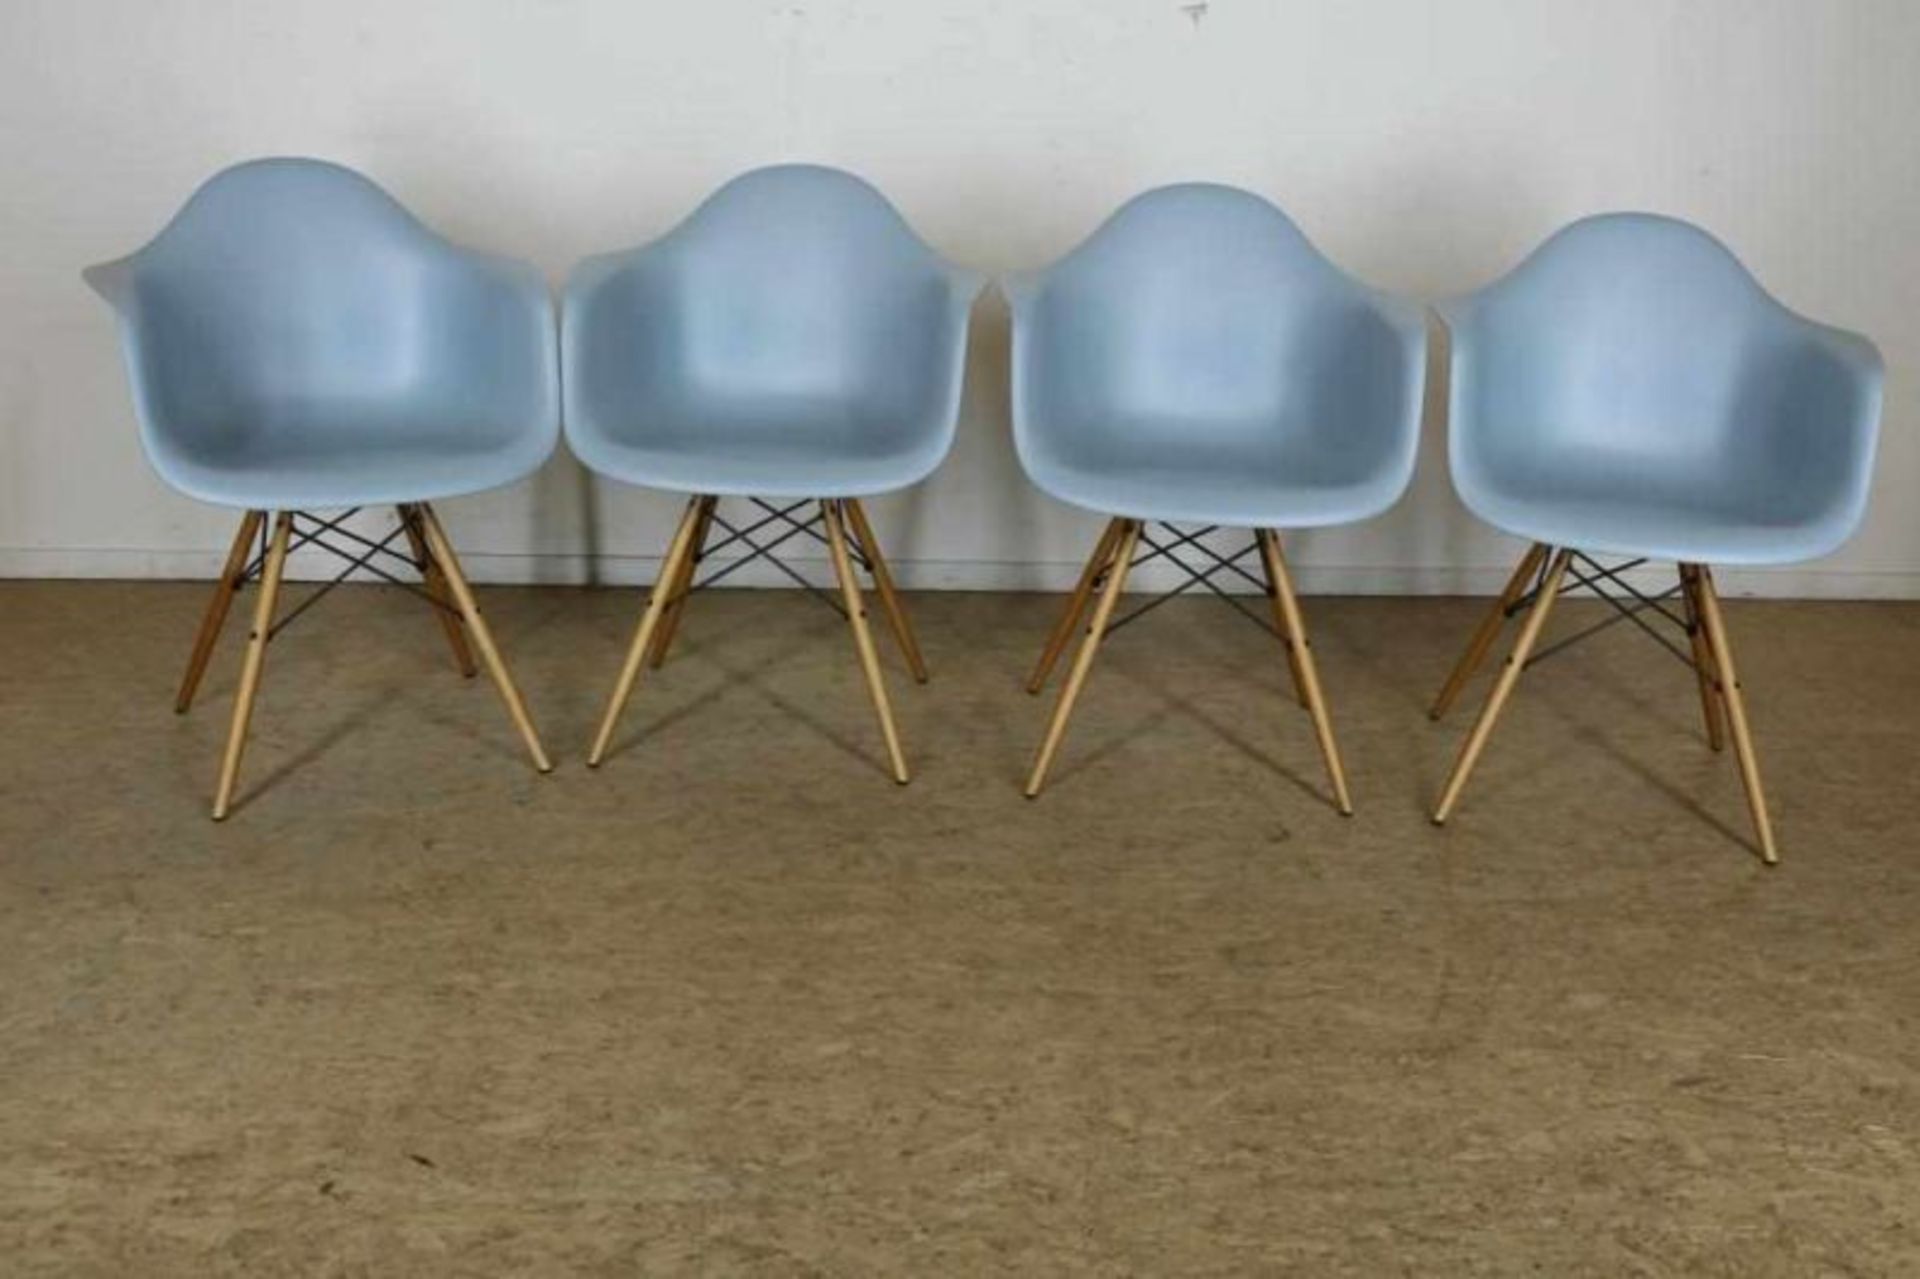 Serie van 4 plastiek stoelen op esdoorn poten, naar ontwerp Charles Eames voor Vitra.